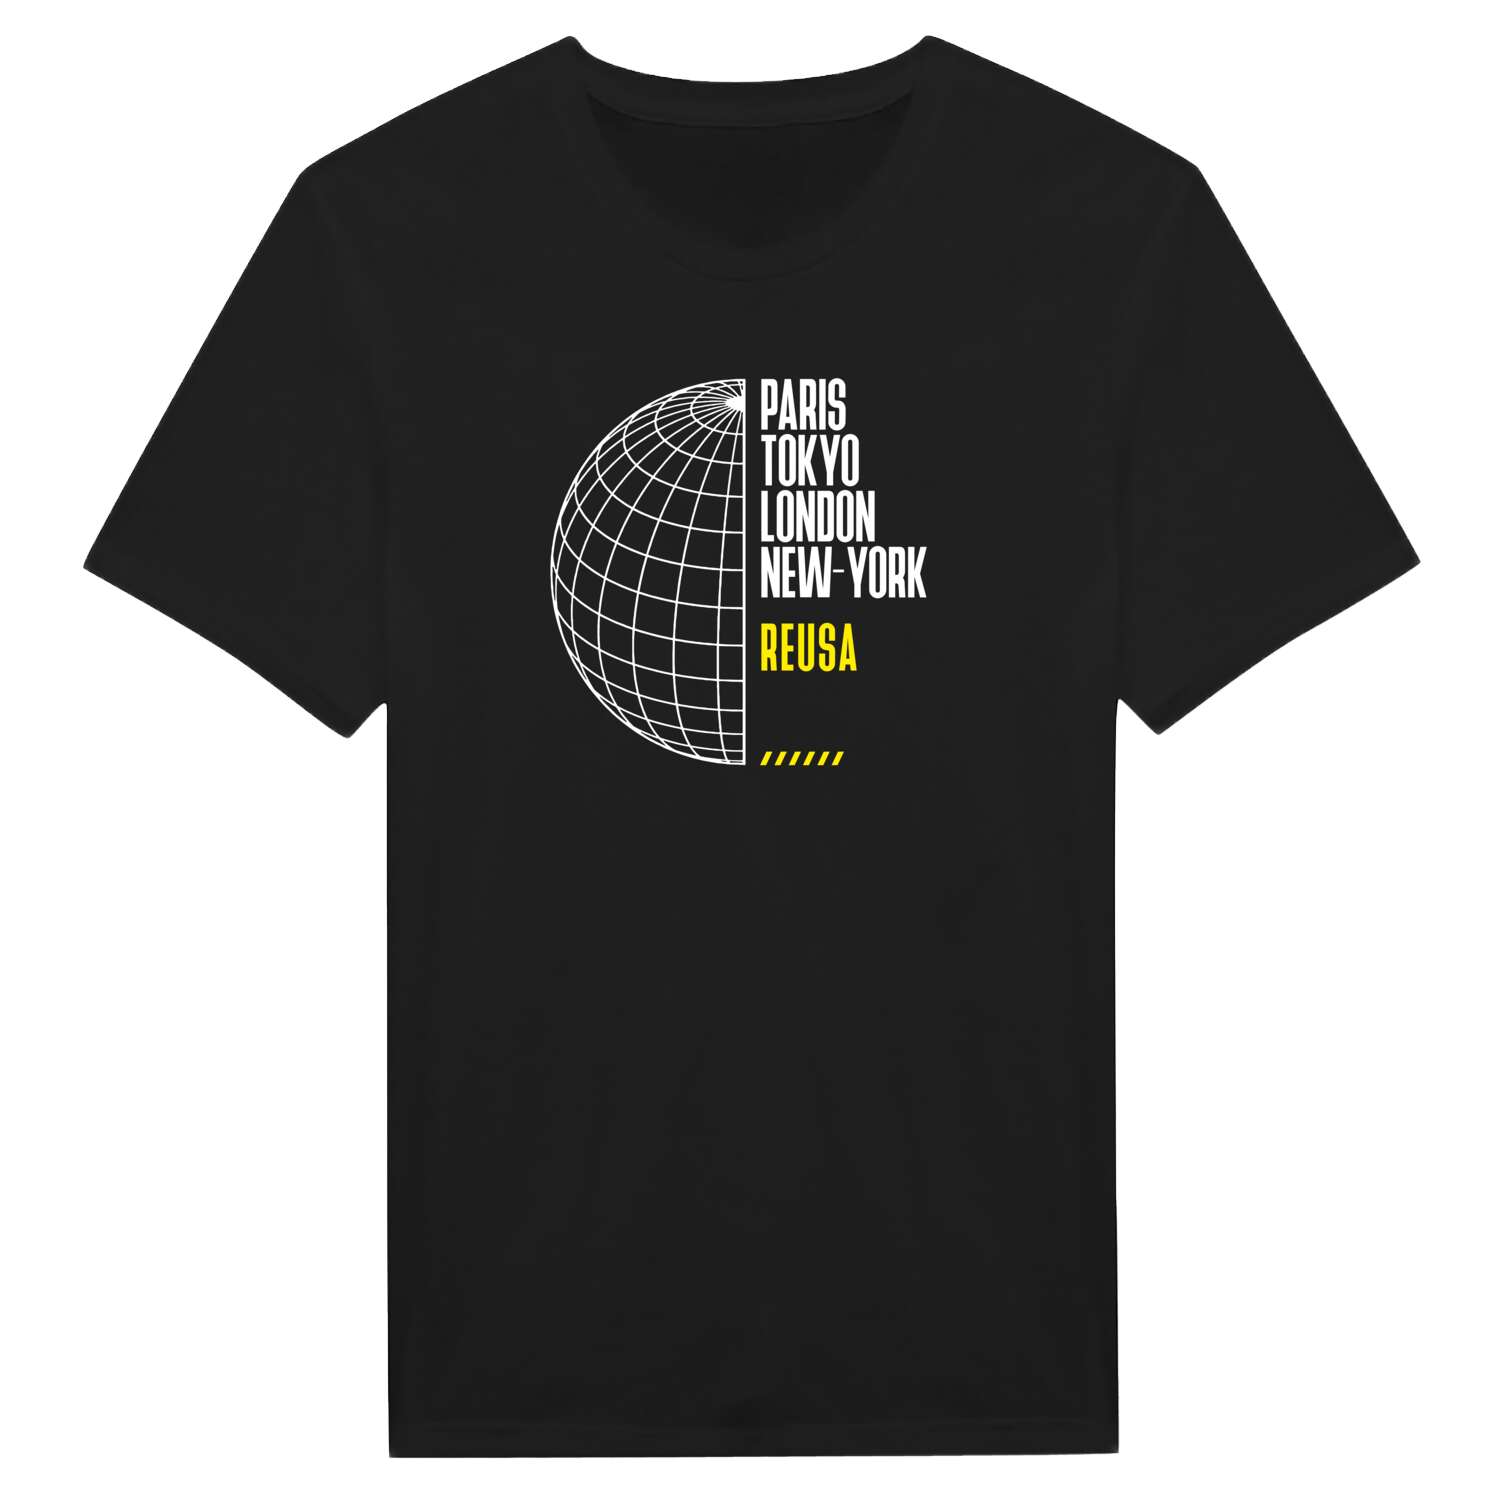 Reusa T-Shirt »Paris Tokyo London«